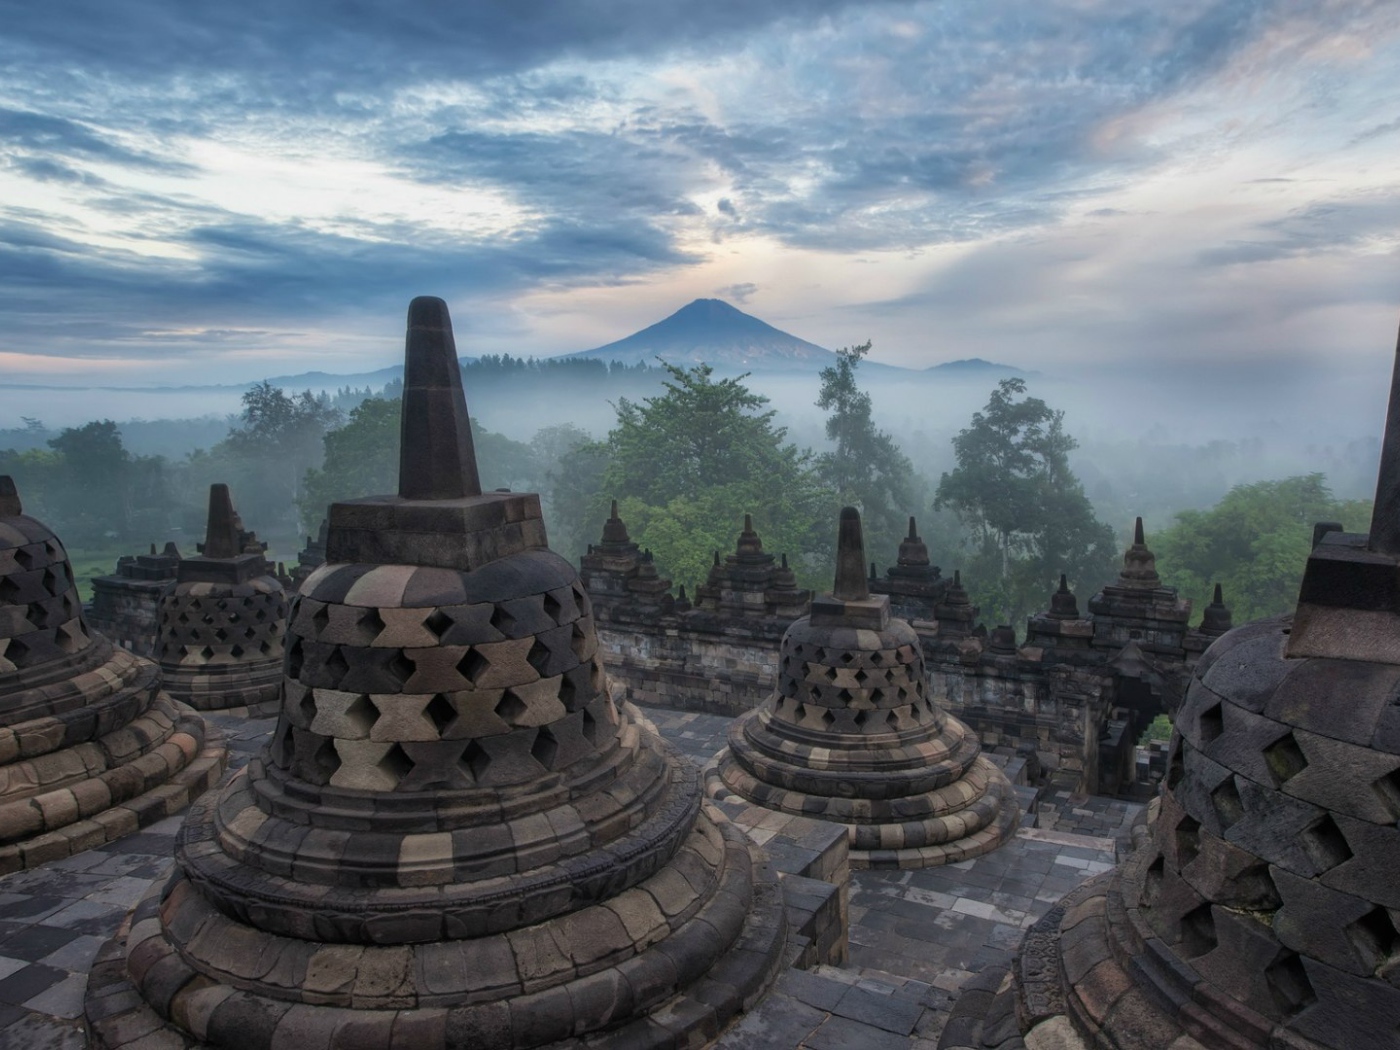 Indonesia, the island of Java, Borobudur Temple